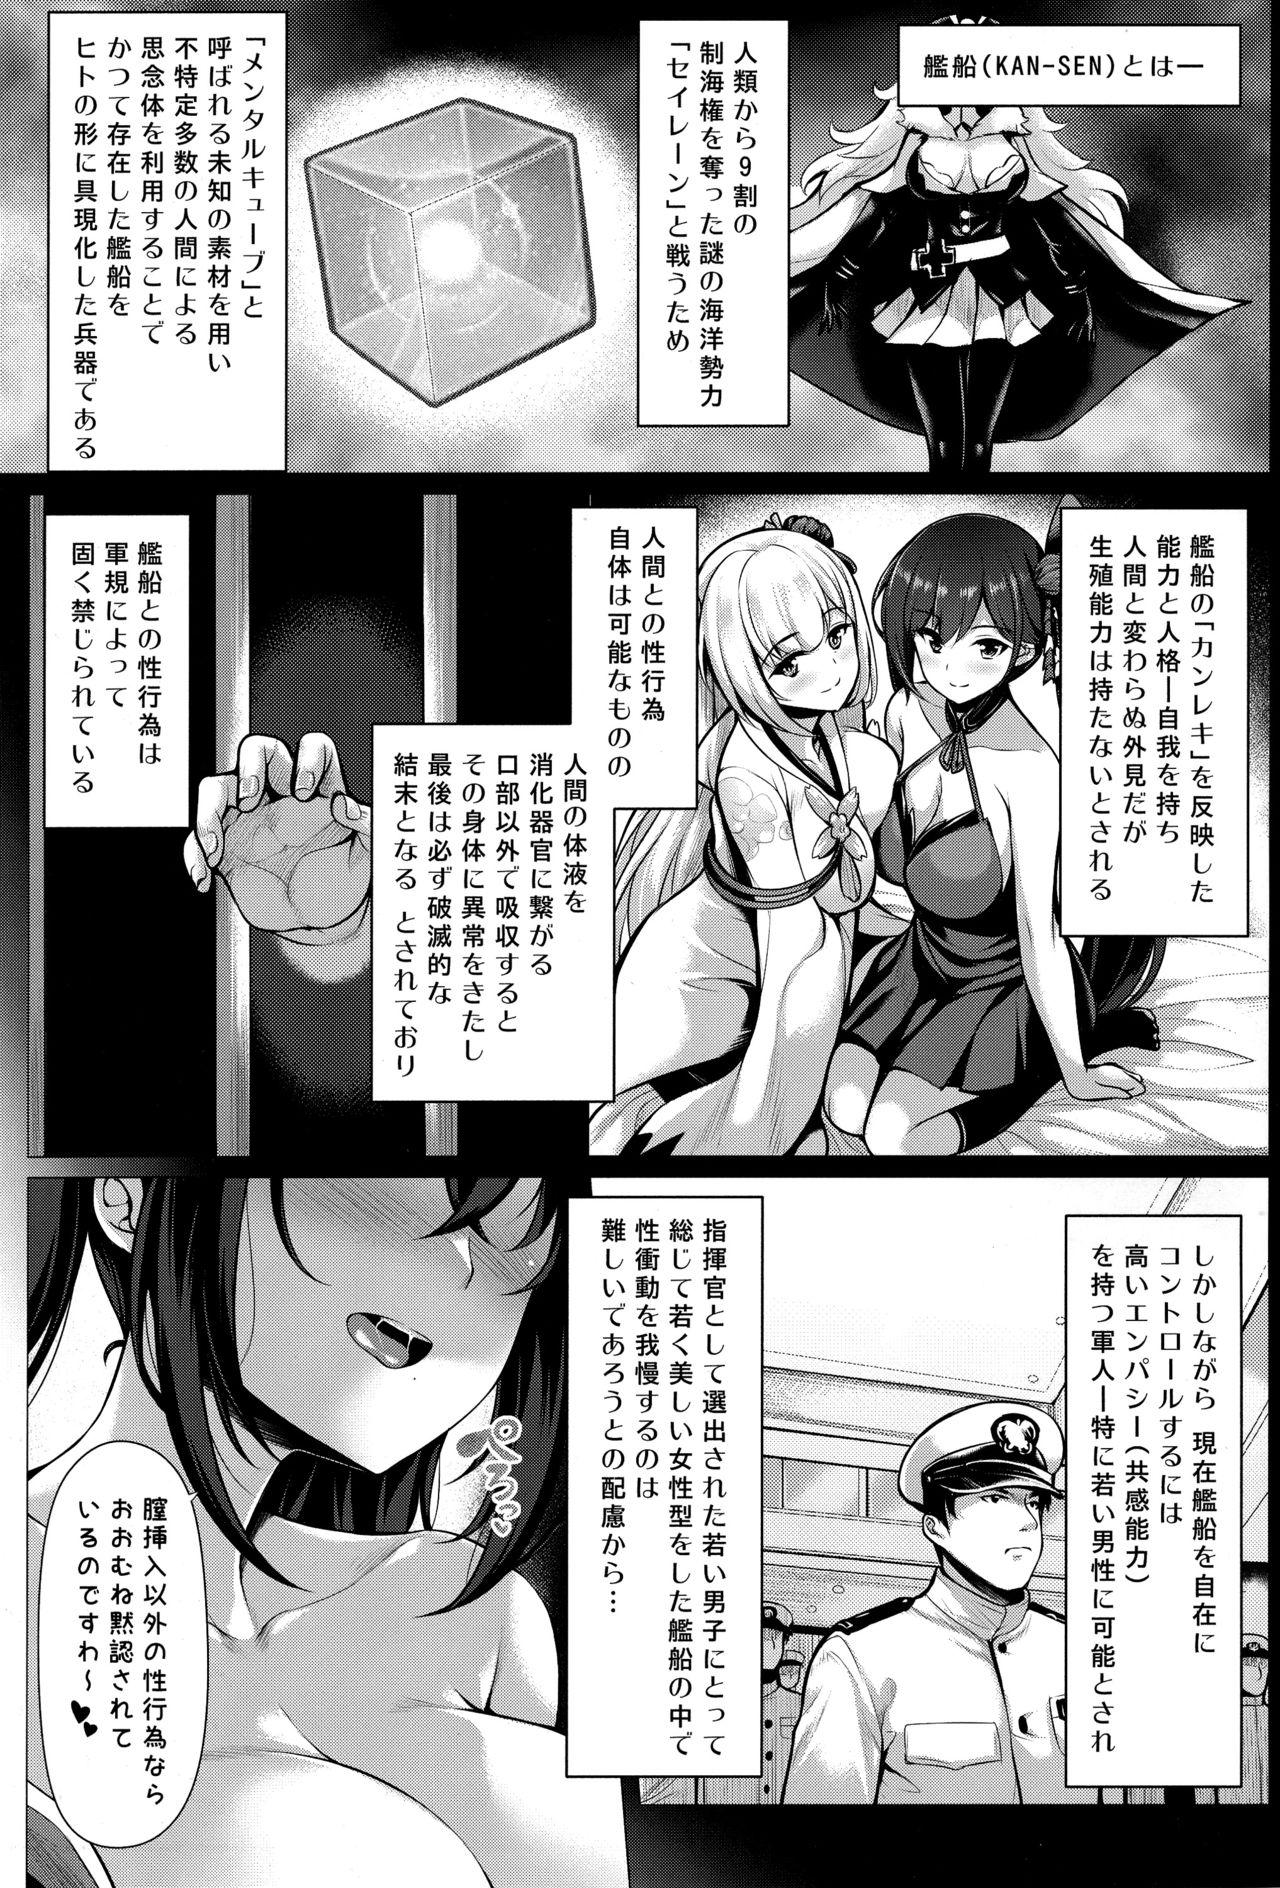 Assfingering Boku wa Kyou mo Kono Soukyuu de Hateru - Azur lane Teensex - Page 2